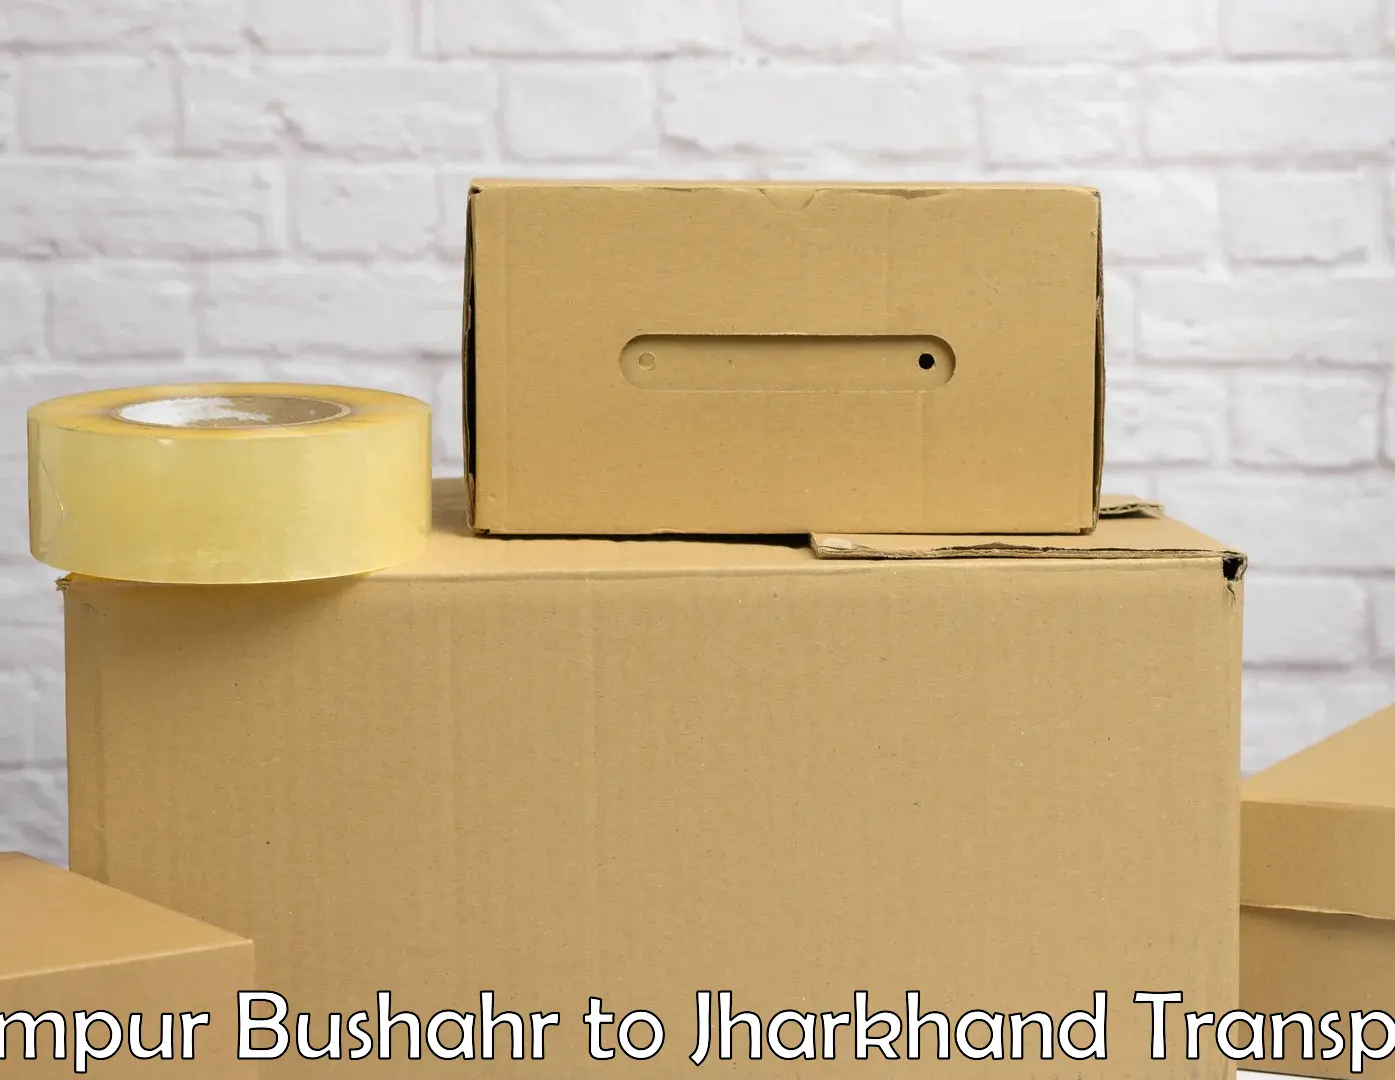 Shipping partner Rampur Bushahr to Bundu